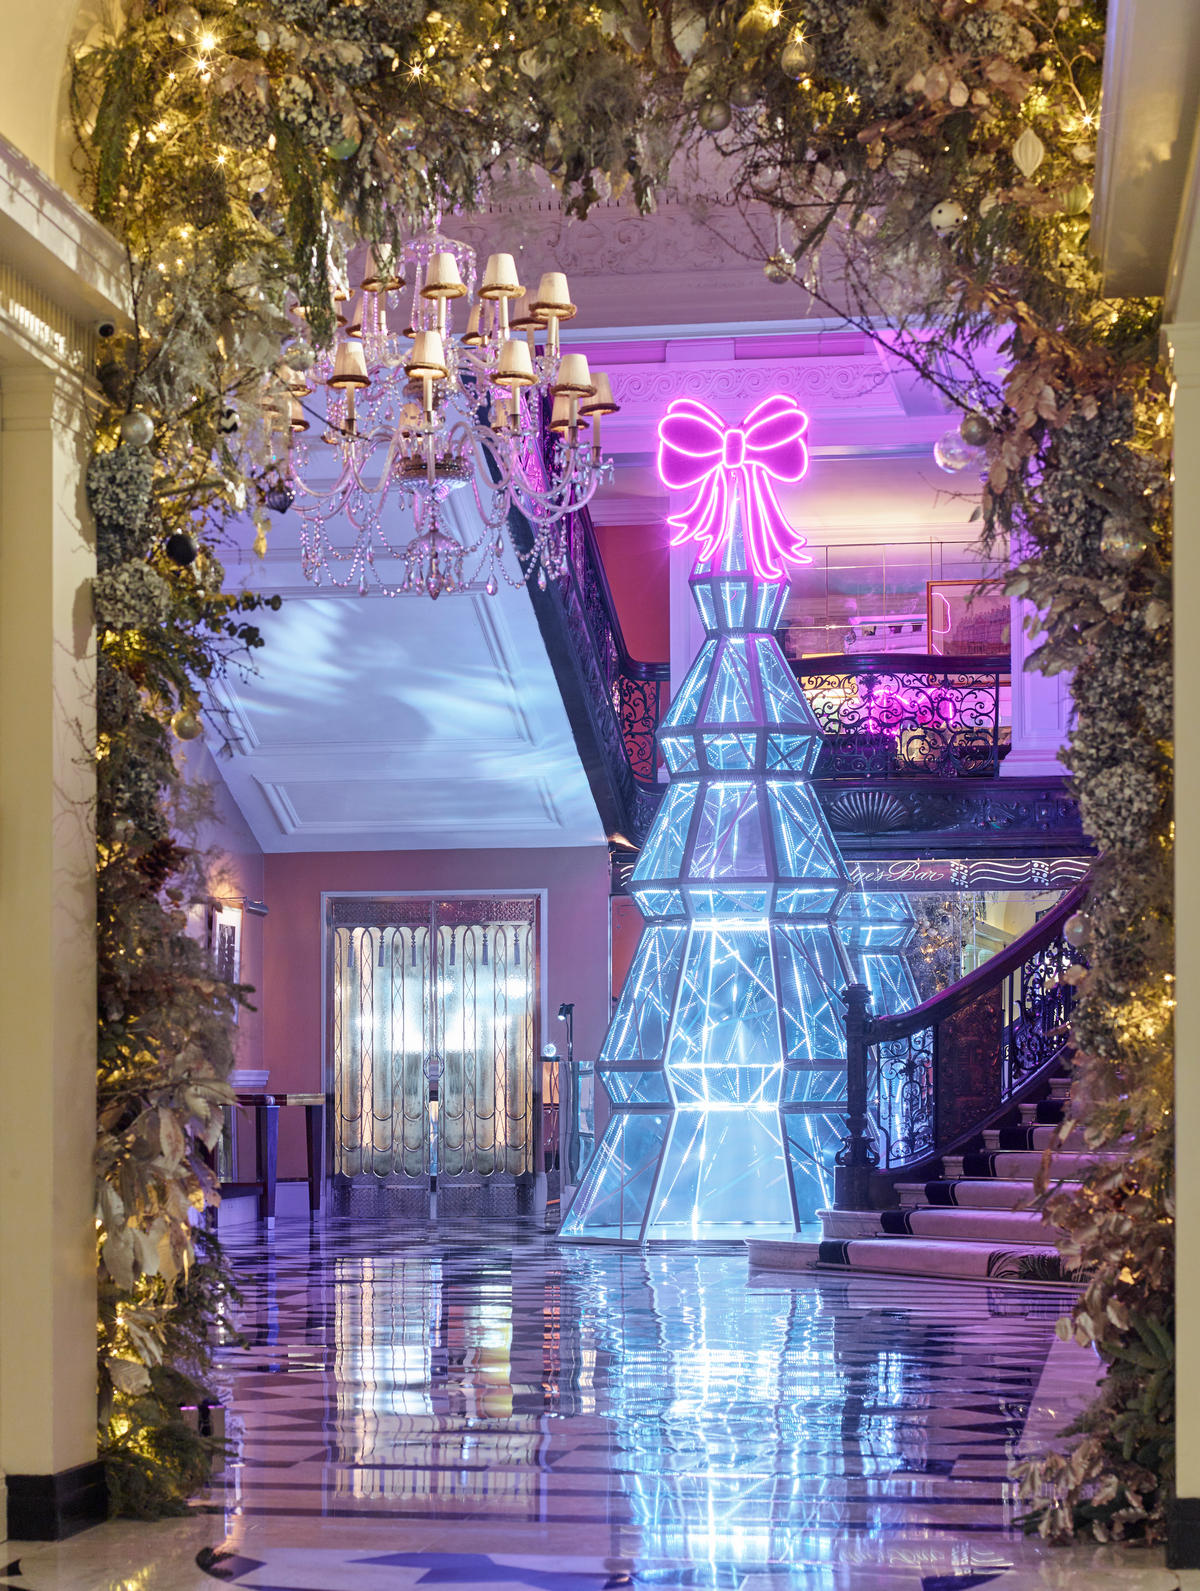 London's famed hotel Claridge’s has a 17 feet tall Christmas